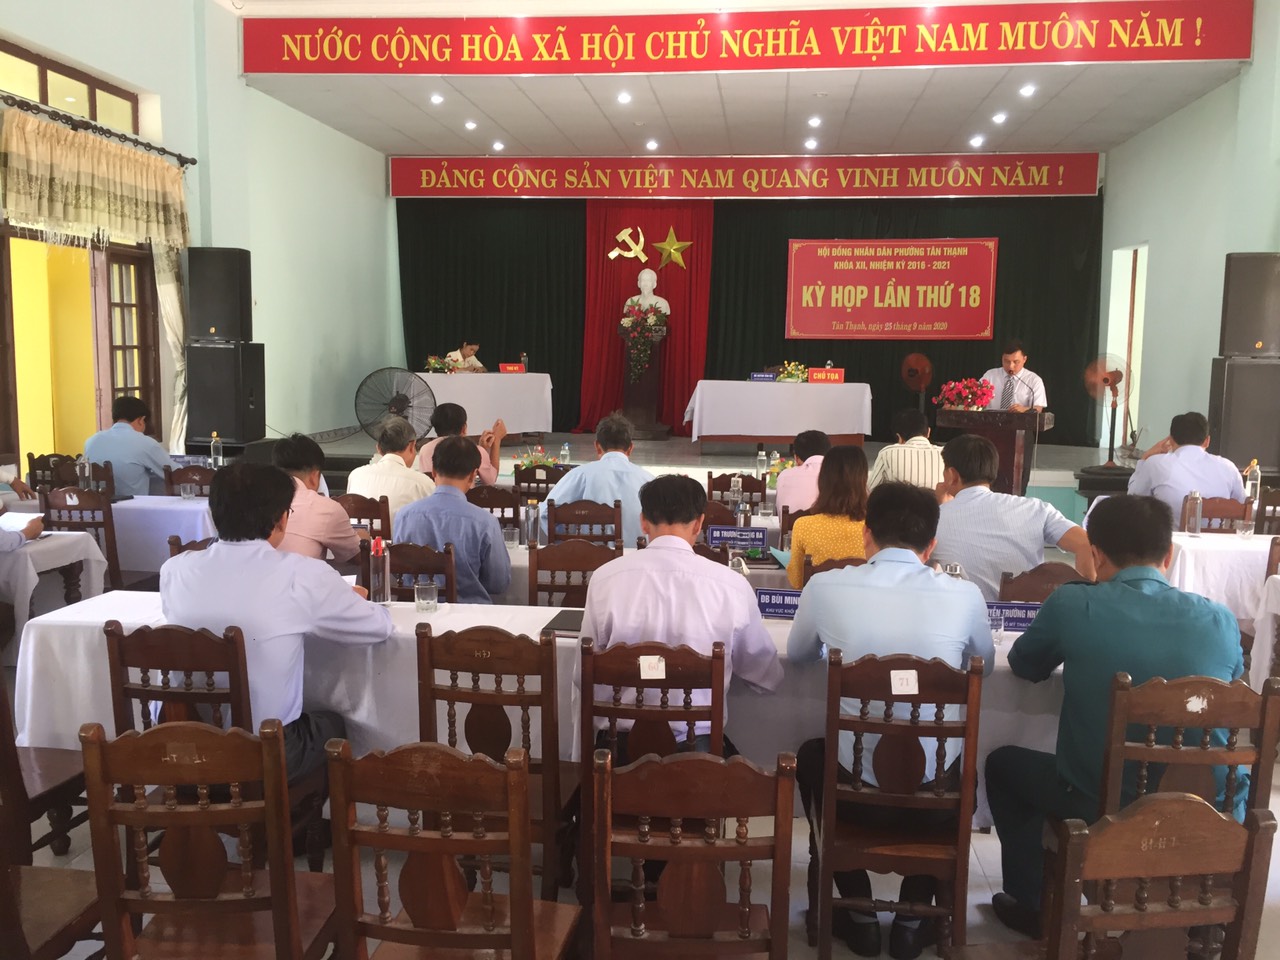 HĐND phường Tân Thạnh họp kỳ họp thứ 18 khóa XII, nhiệm kỳ 2016 - 2021